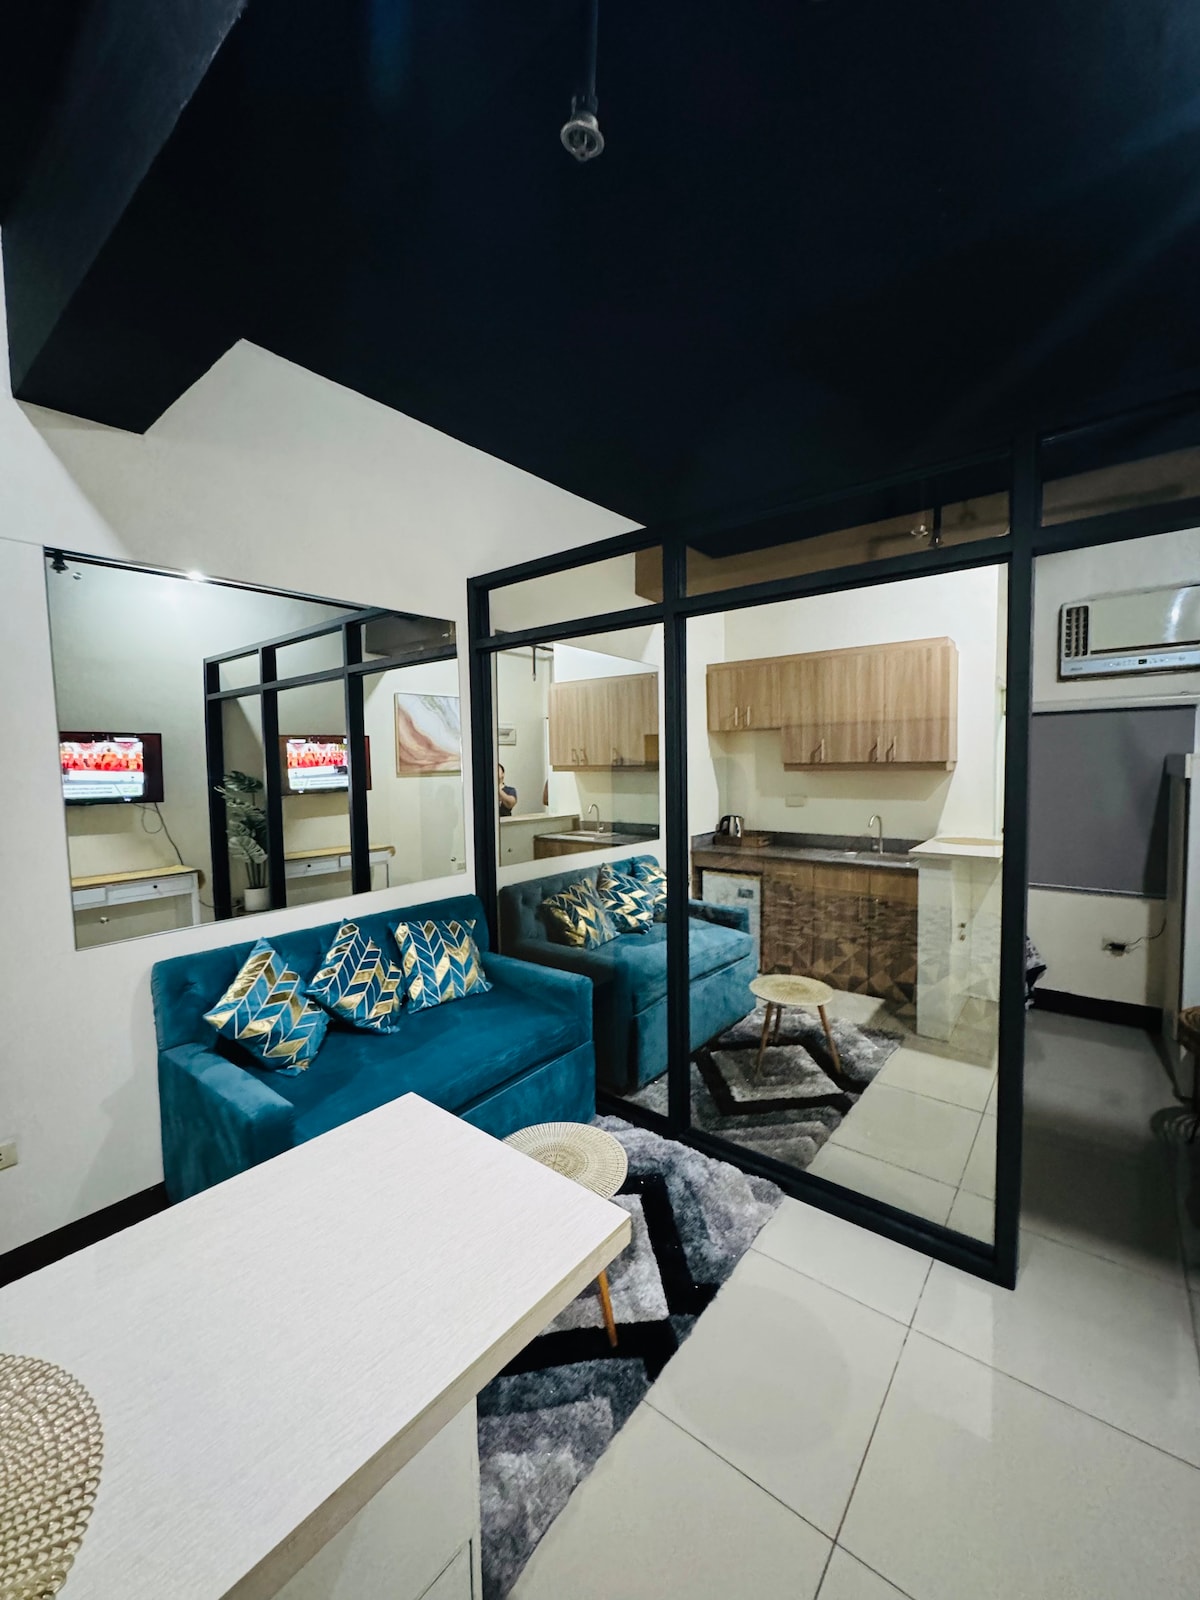 Condominium Unit For Rent Cebu